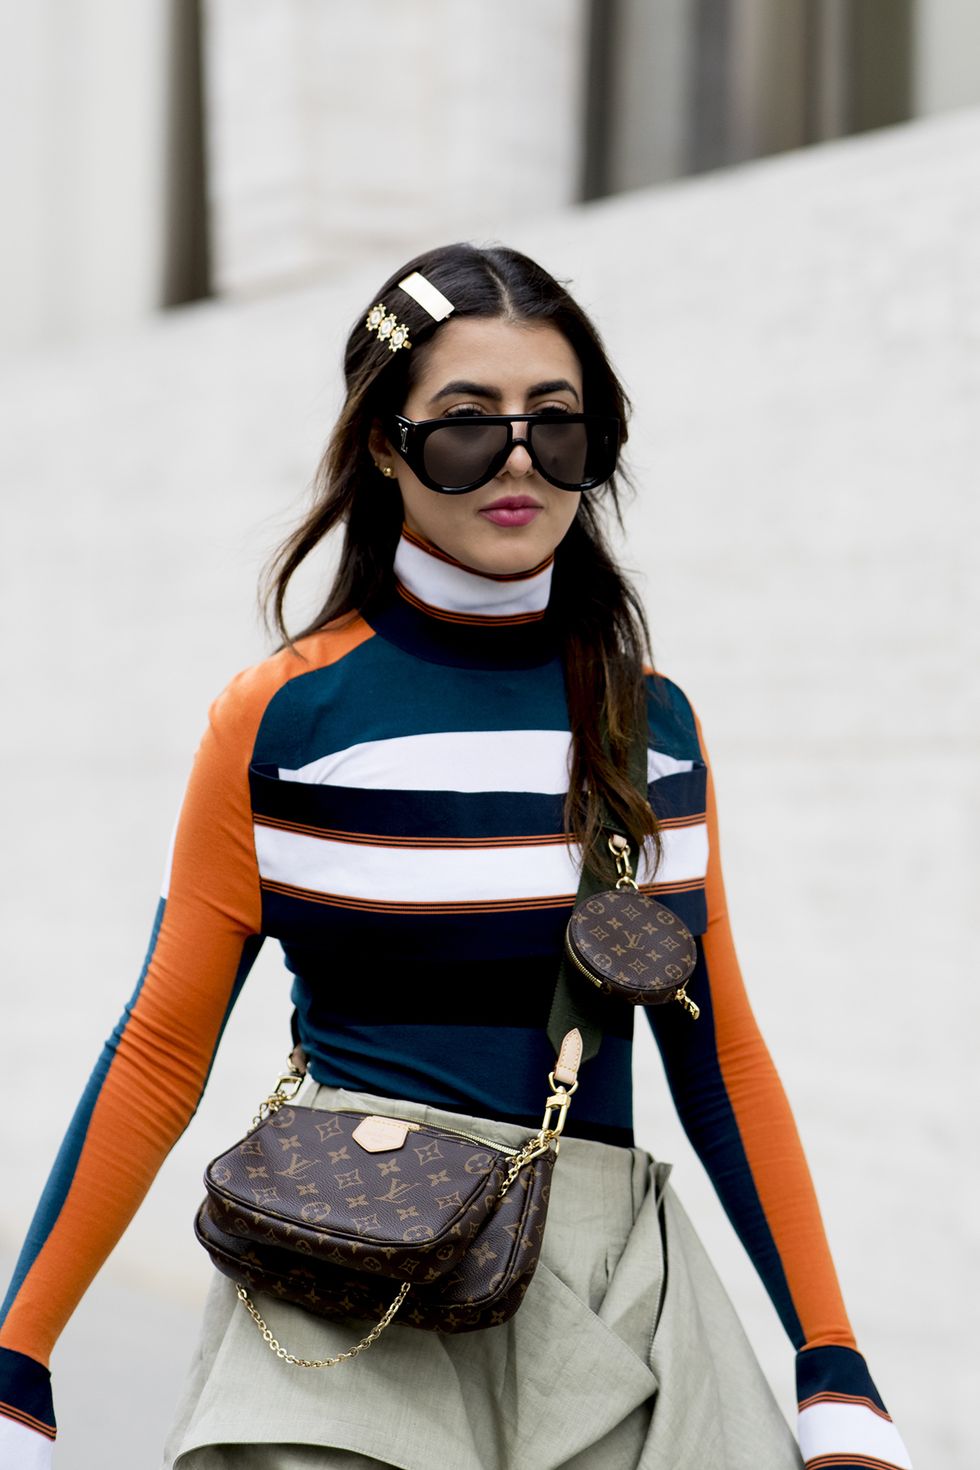 Le borse firmate sono l'accessorio top che cambia radicalmente i tuoi outfit e queste sono le più glam e tendenza moda inverno 2020.